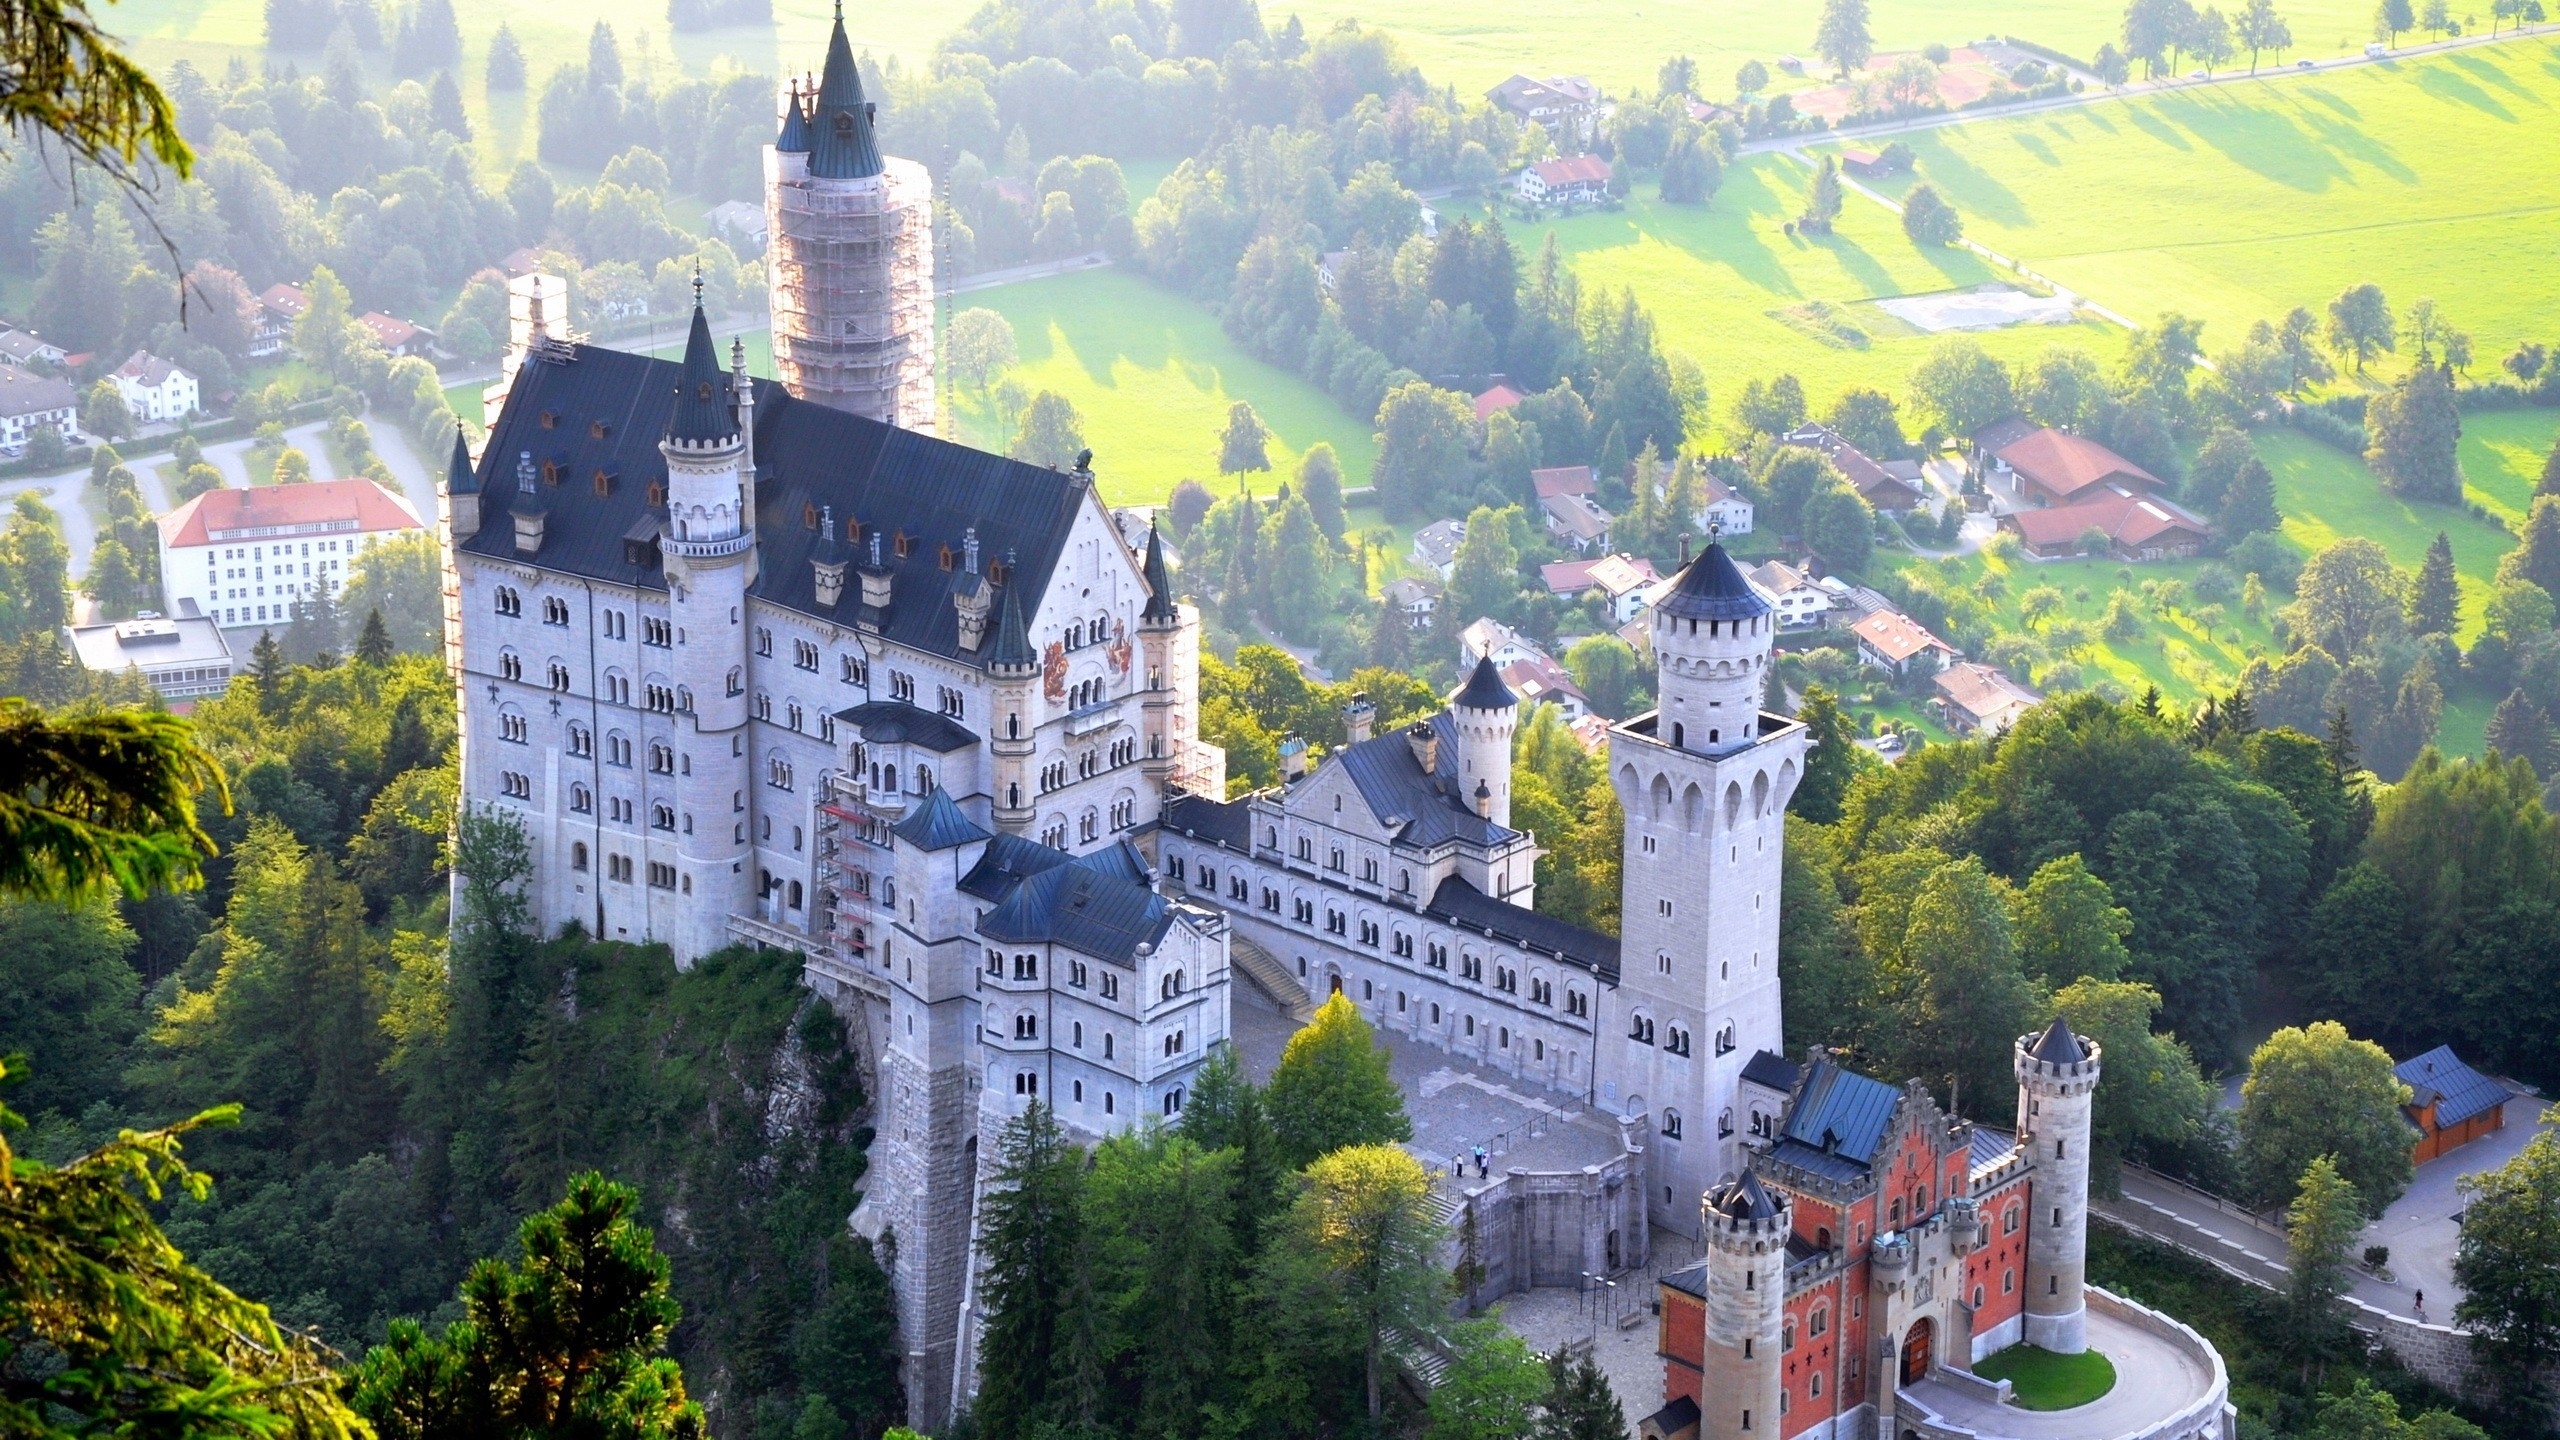 Neuschwanstein Castle View for 2560x1440 HDTV resolution